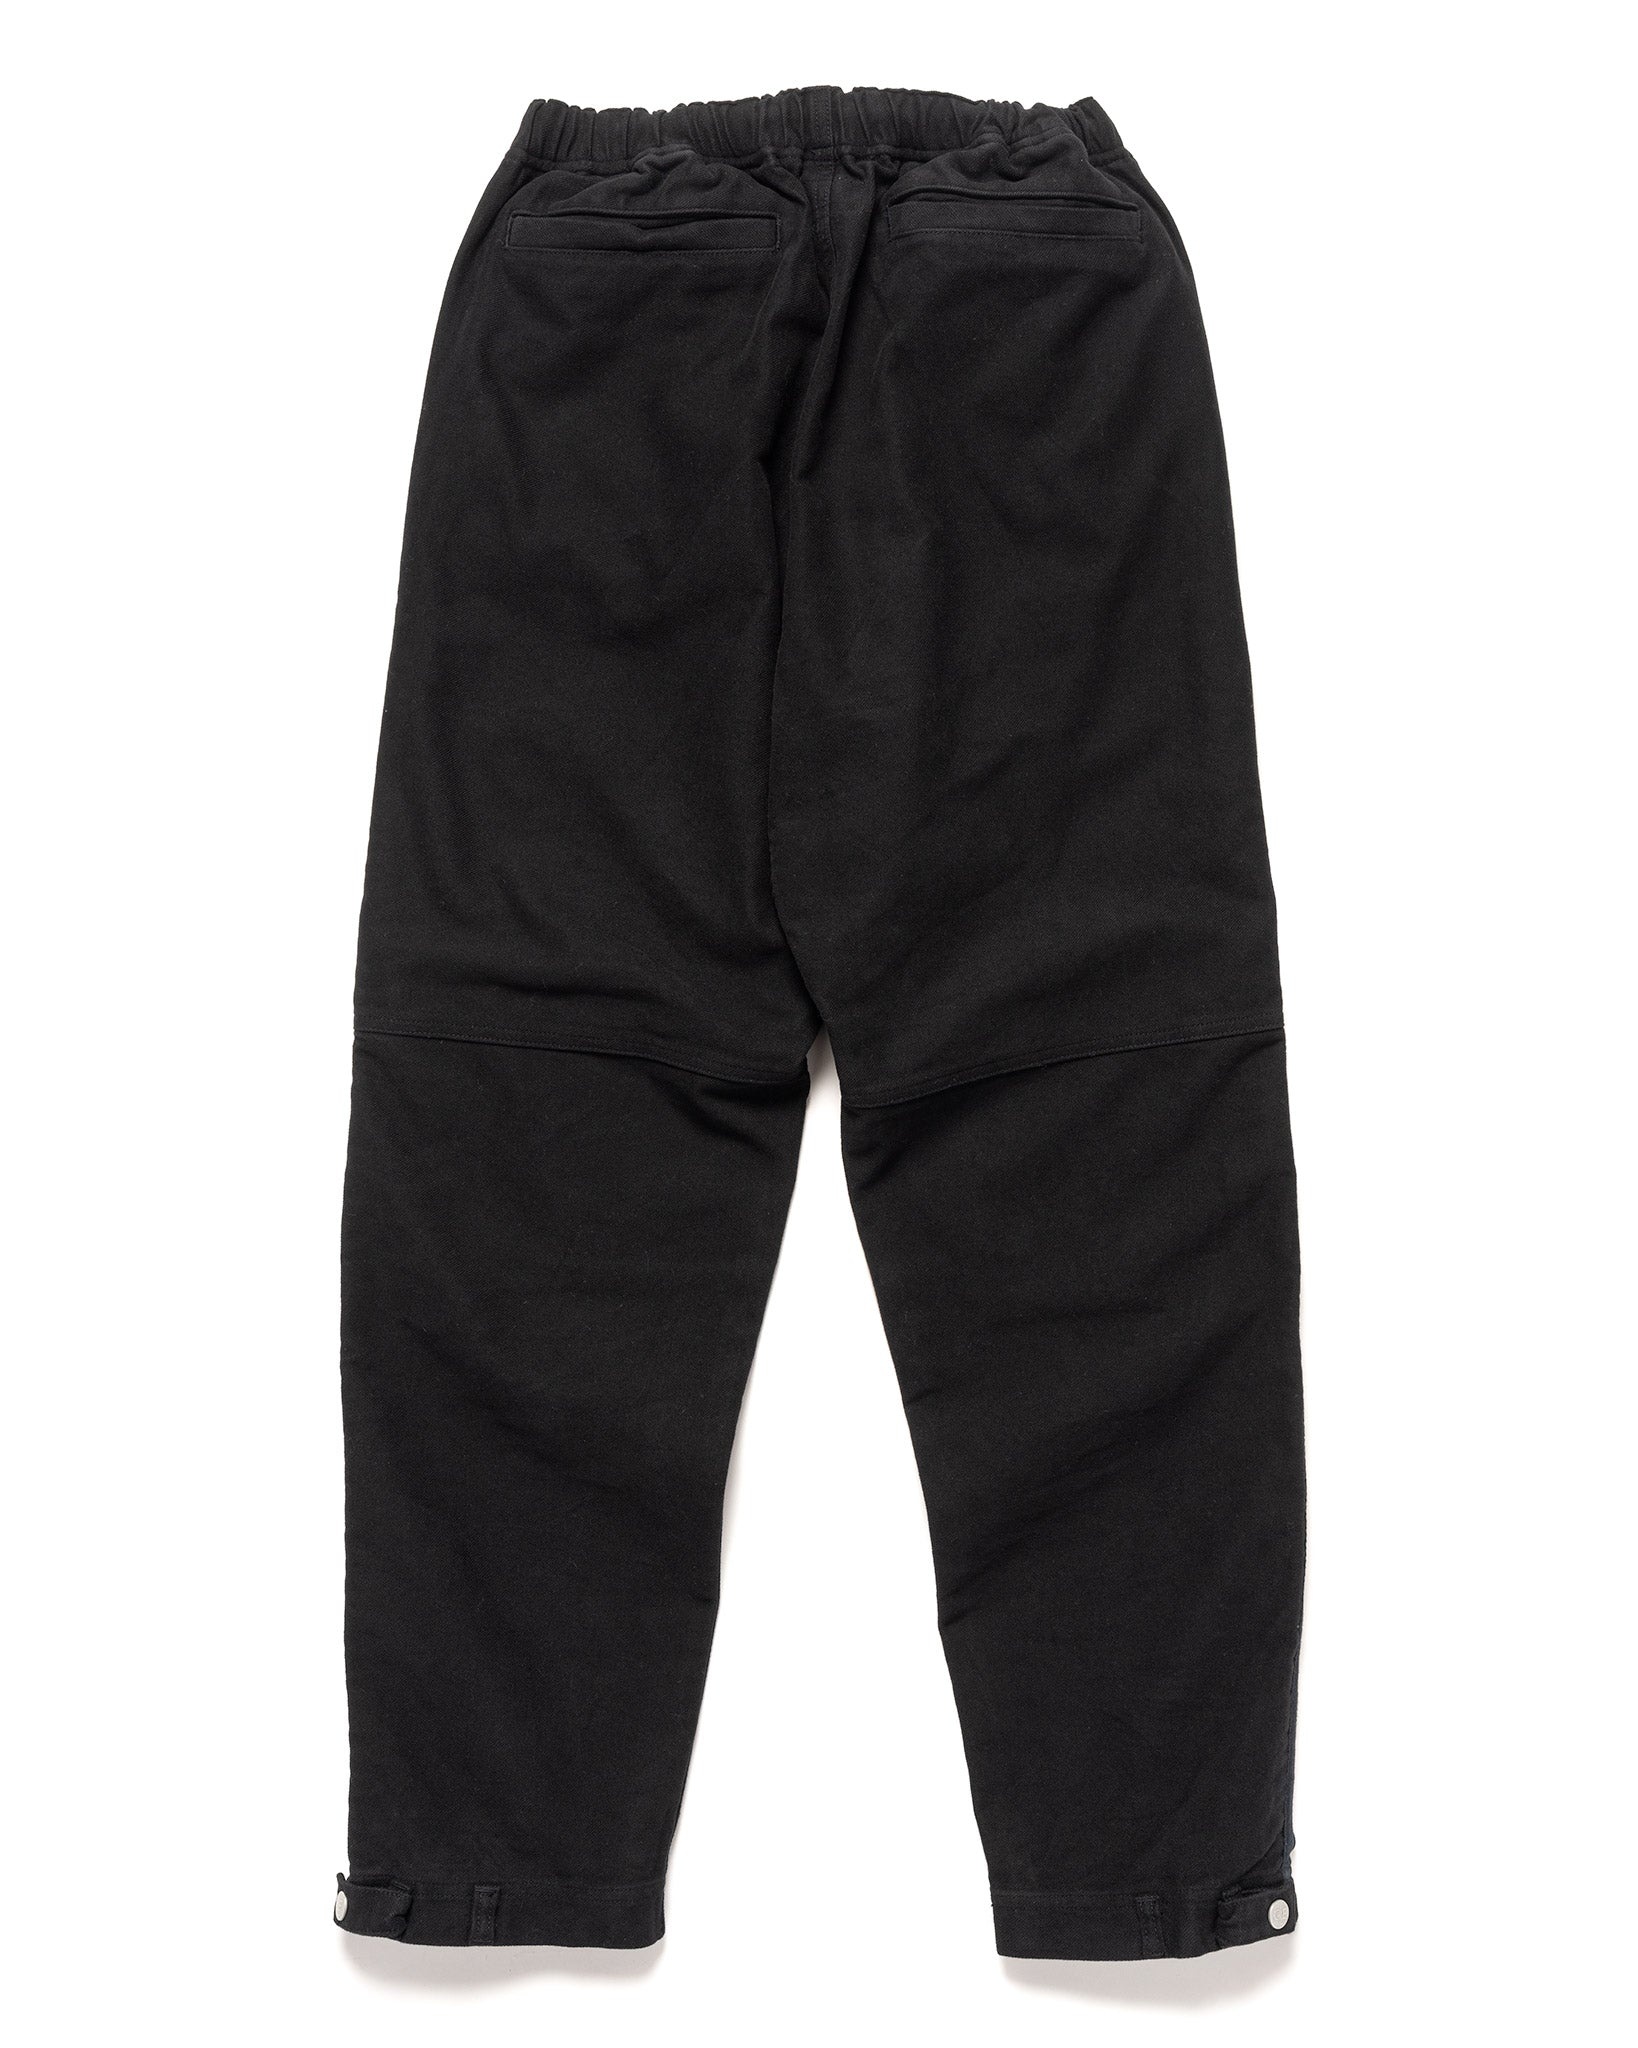 Cotton JMG Pants Black - 3